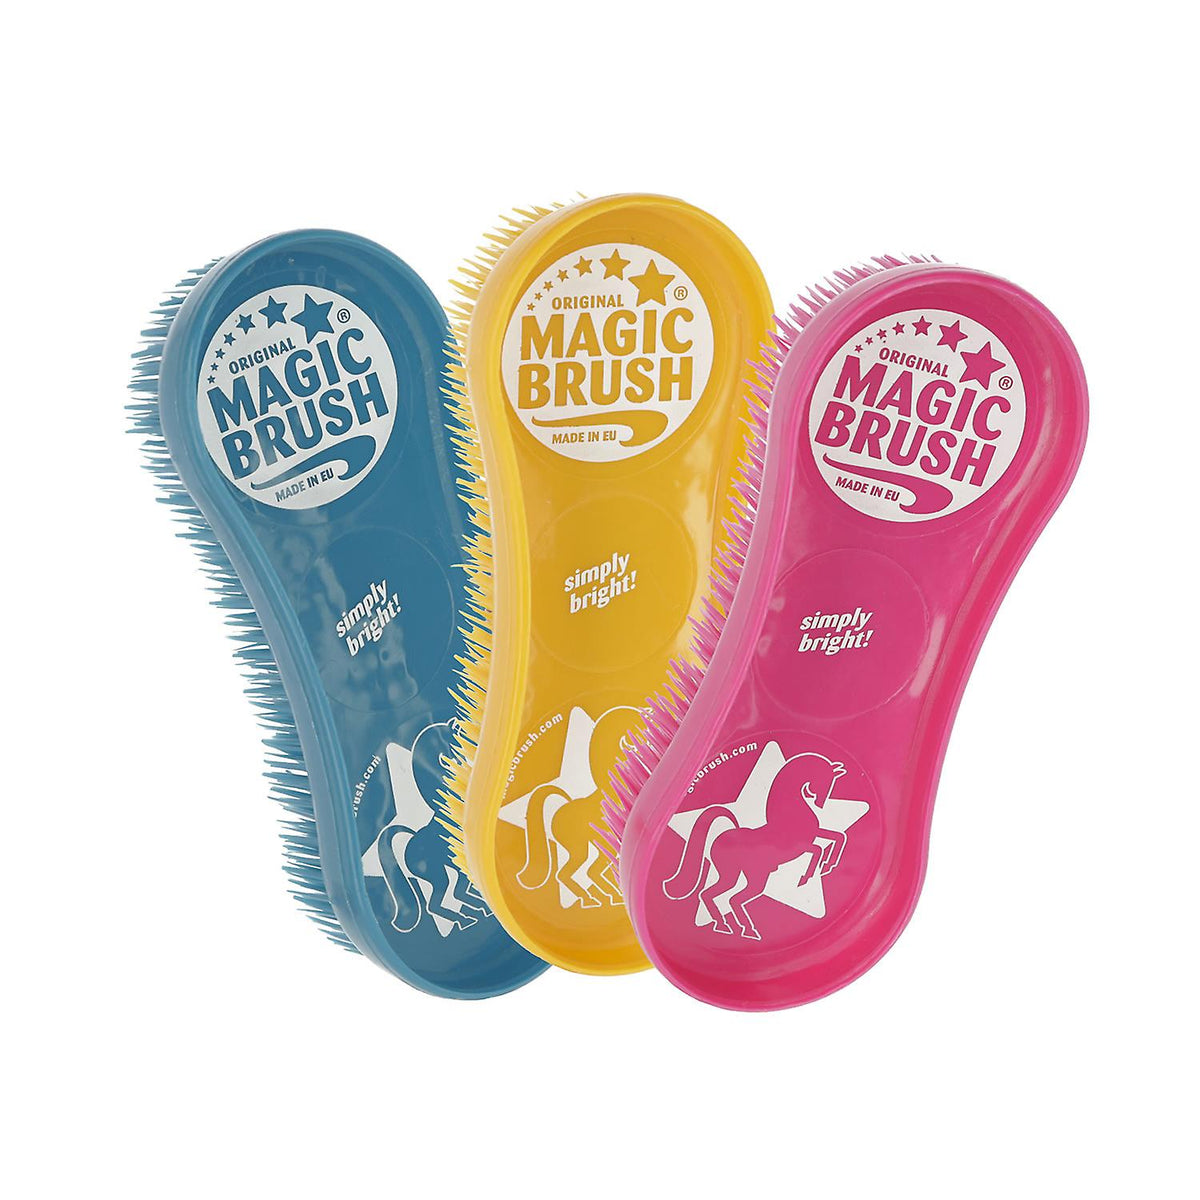 Magic Brushes